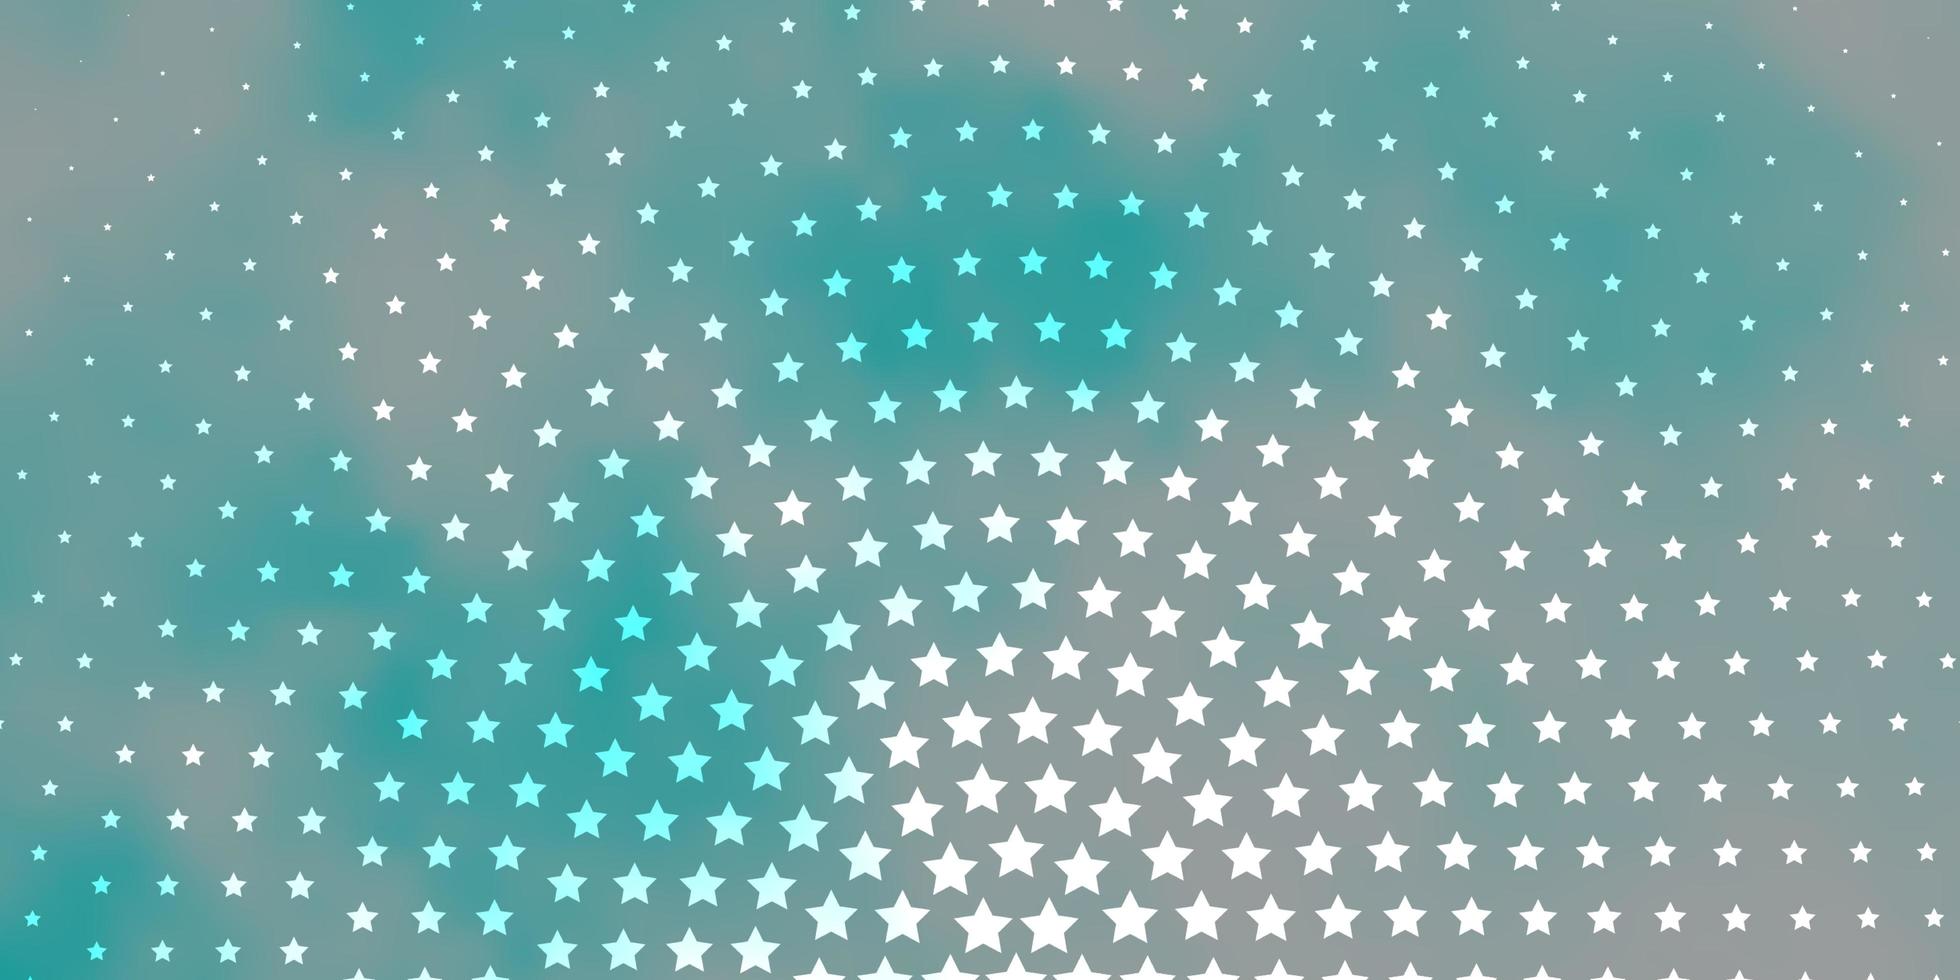 fundo vector azul claro com estrelas pequenas e grandes. ilustração colorida em estilo abstrato com estrelas gradientes. tema para telefones celulares.